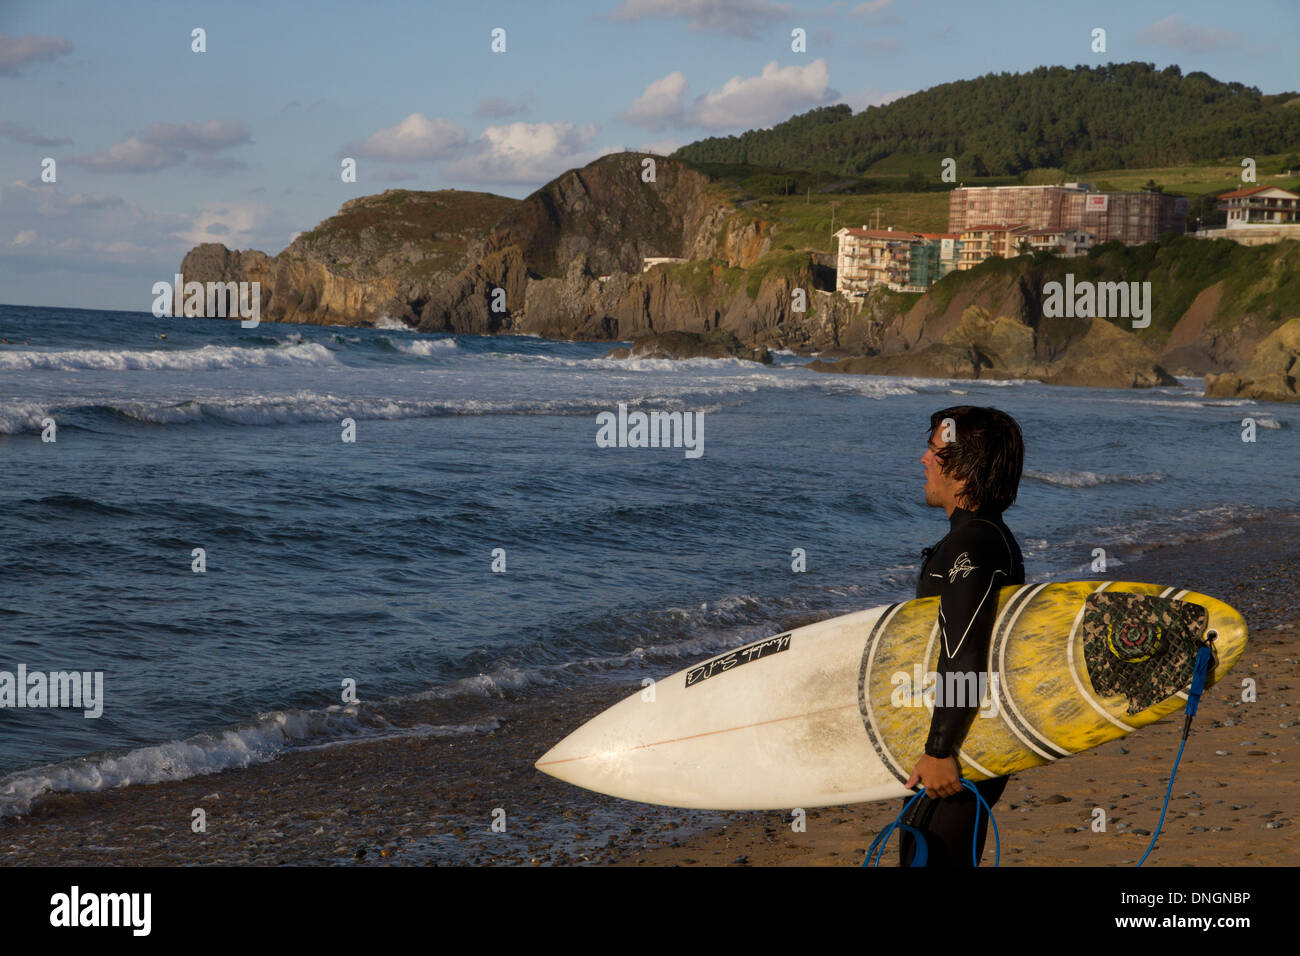 Surfer ocean Mar Cantábrico Cantabrian Sea beach Spain Stock Photo